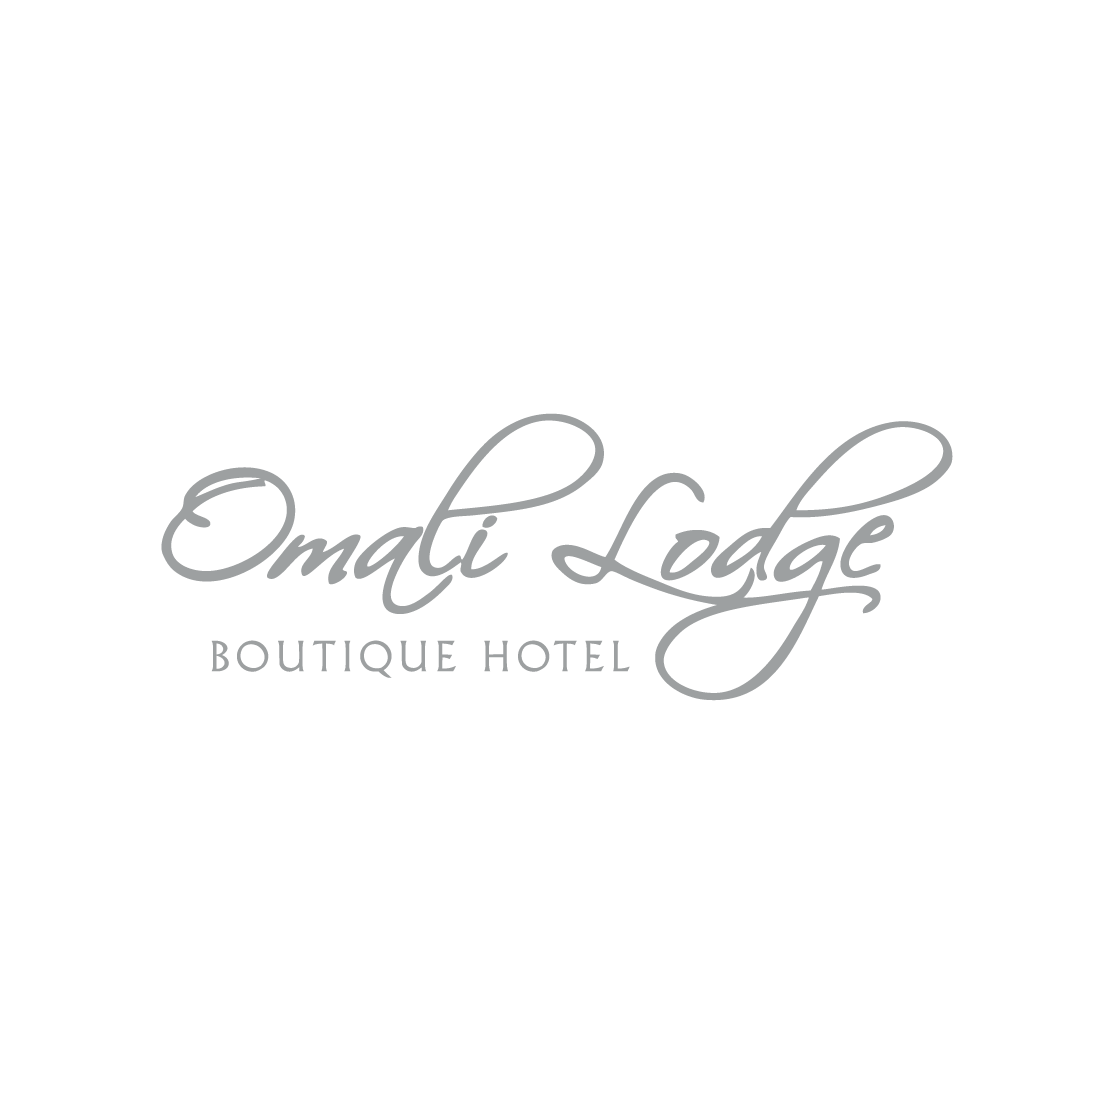 Omali Lodge